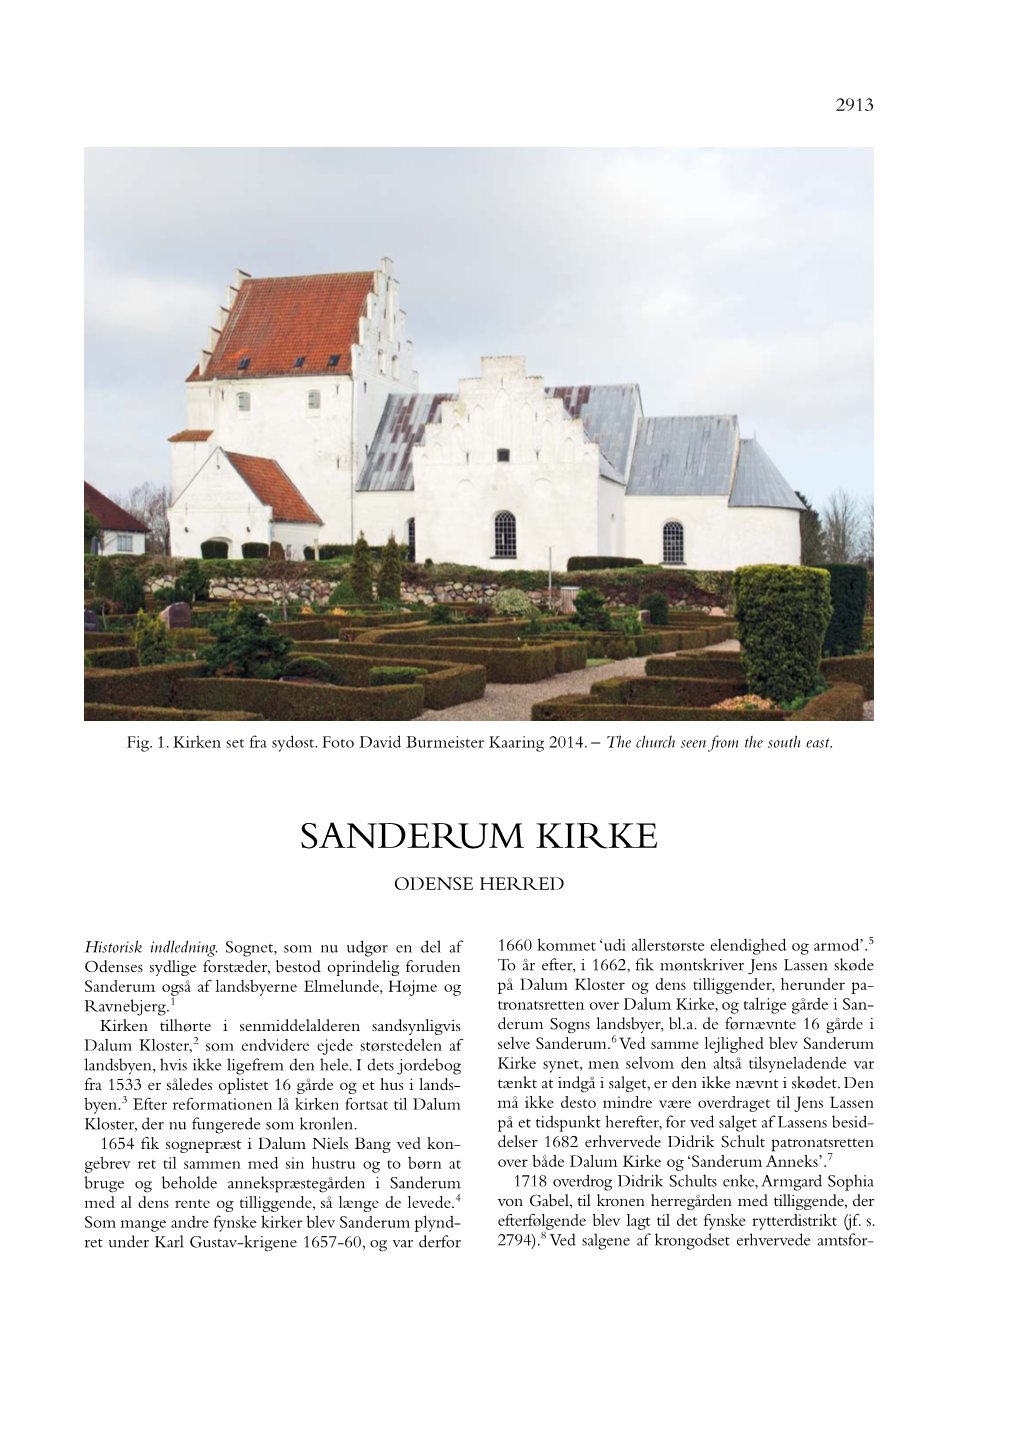 Sanderum Kirke Odense Herred